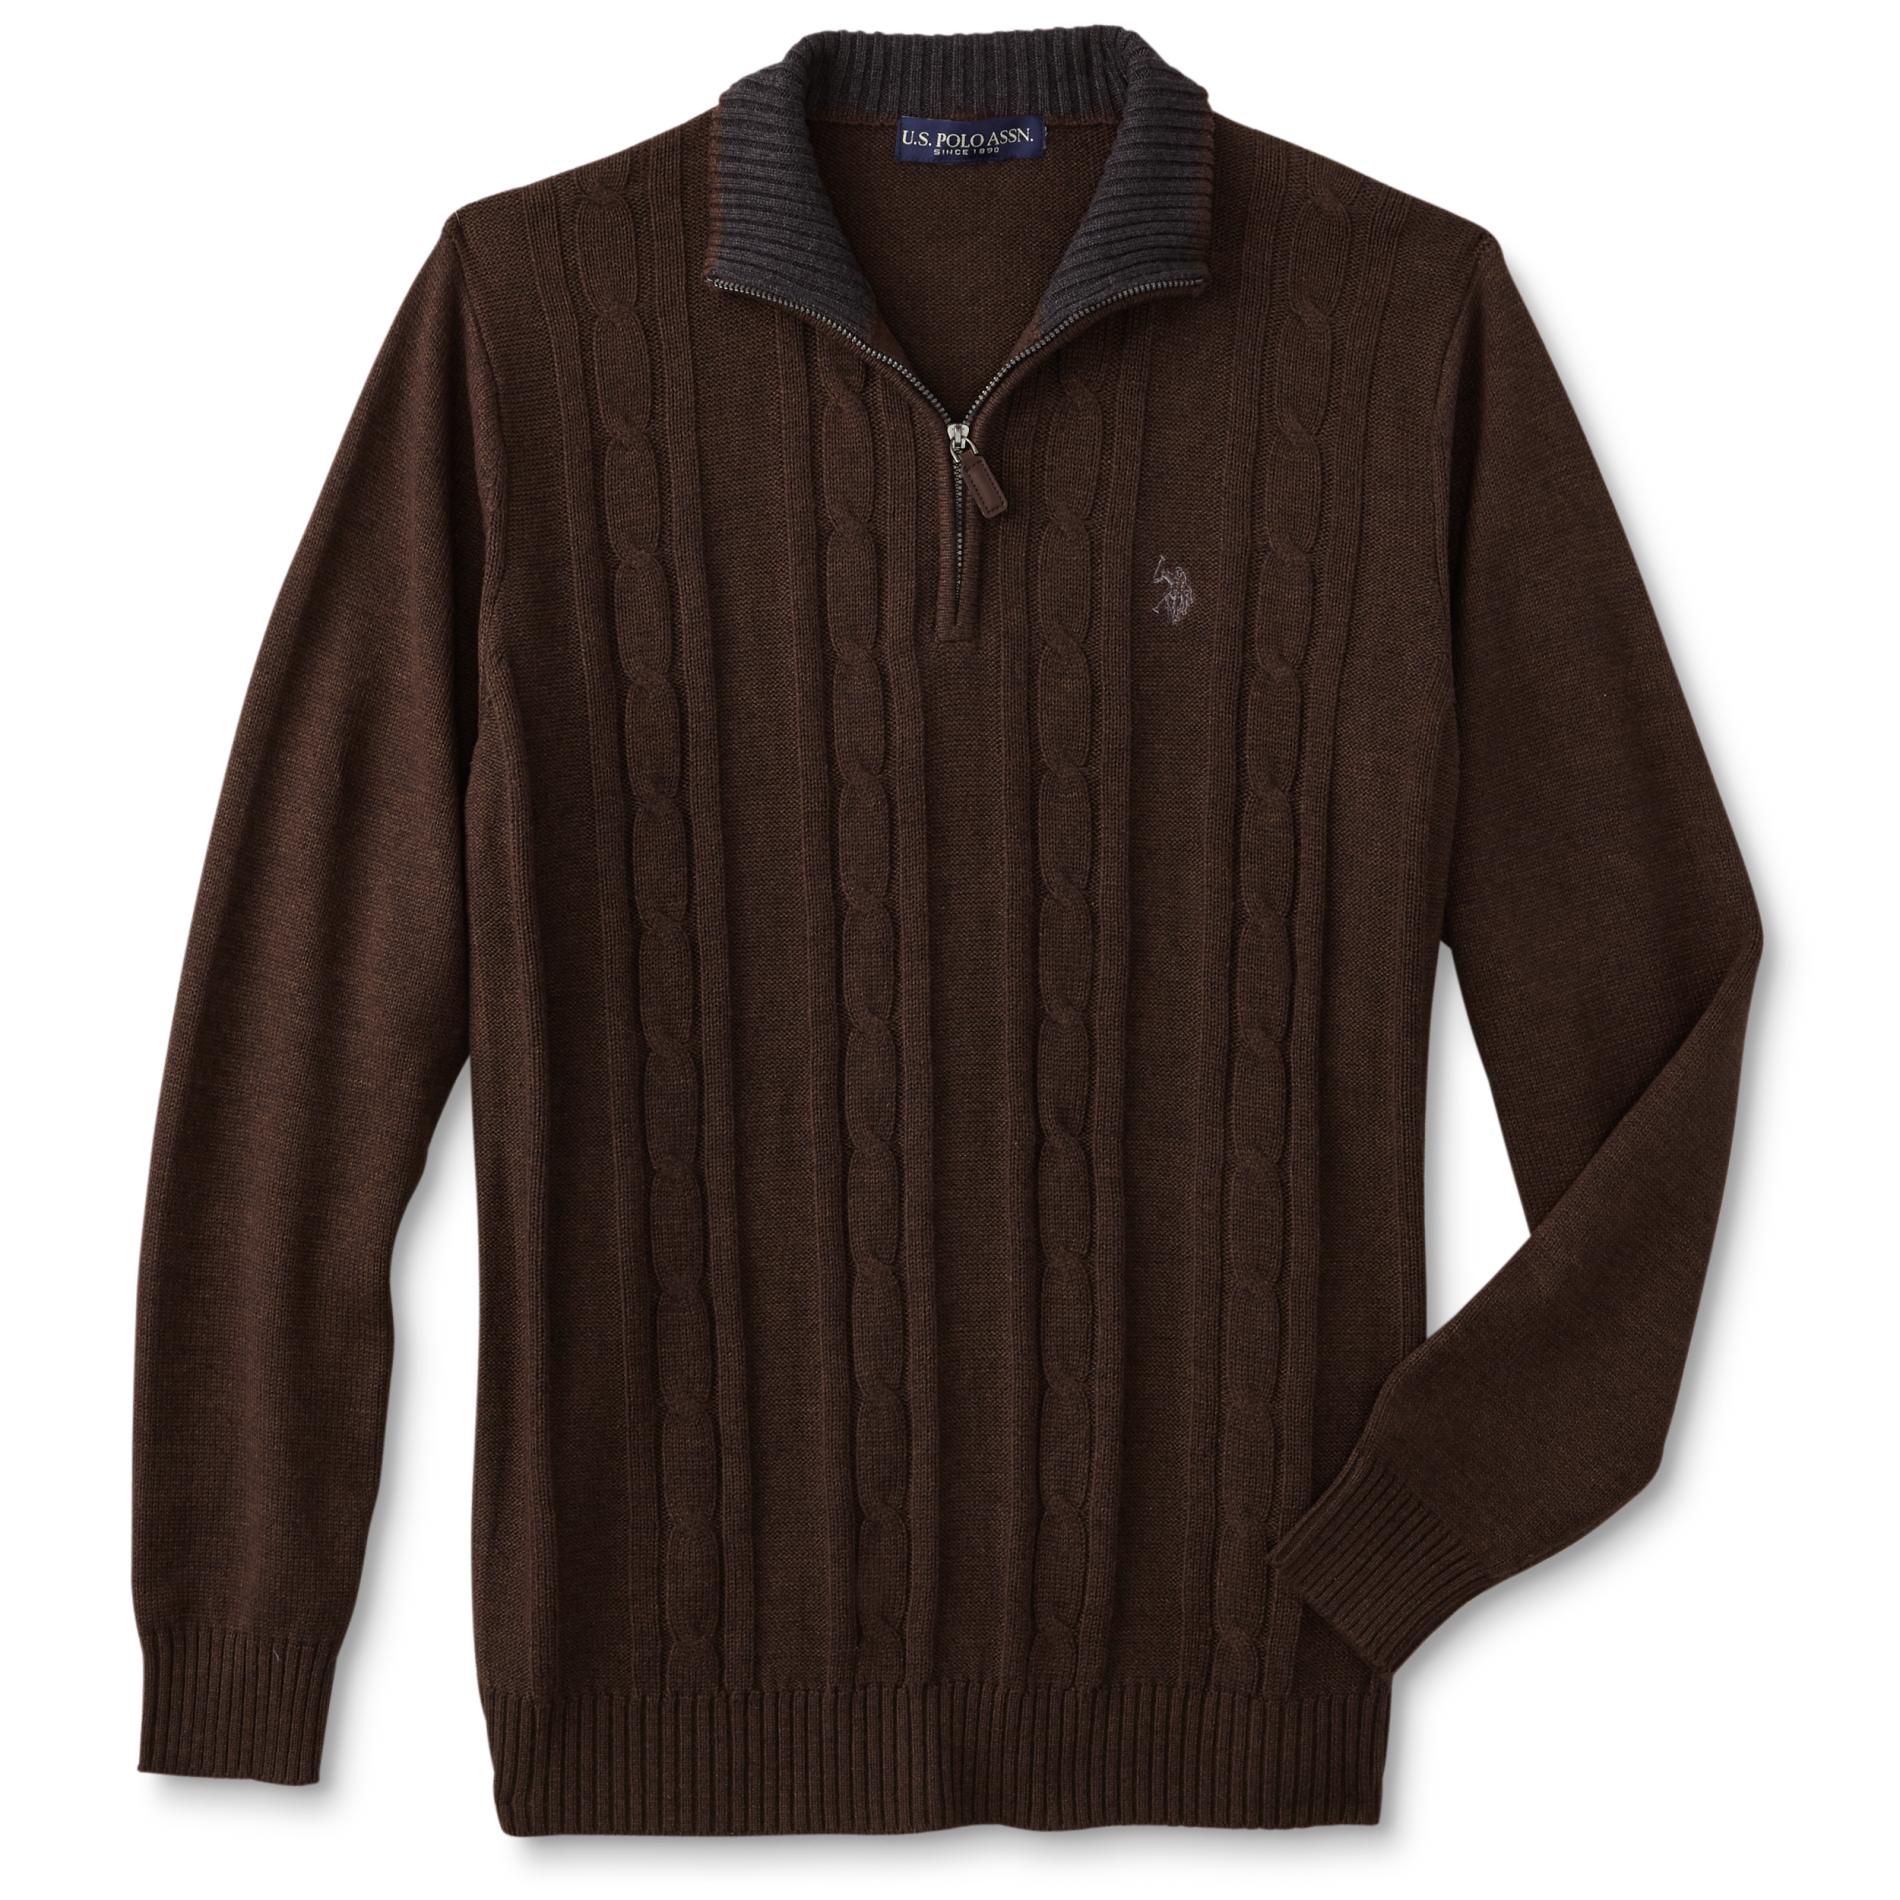 U.S. Polo Assn. Men's Quarter-Zip Sweater